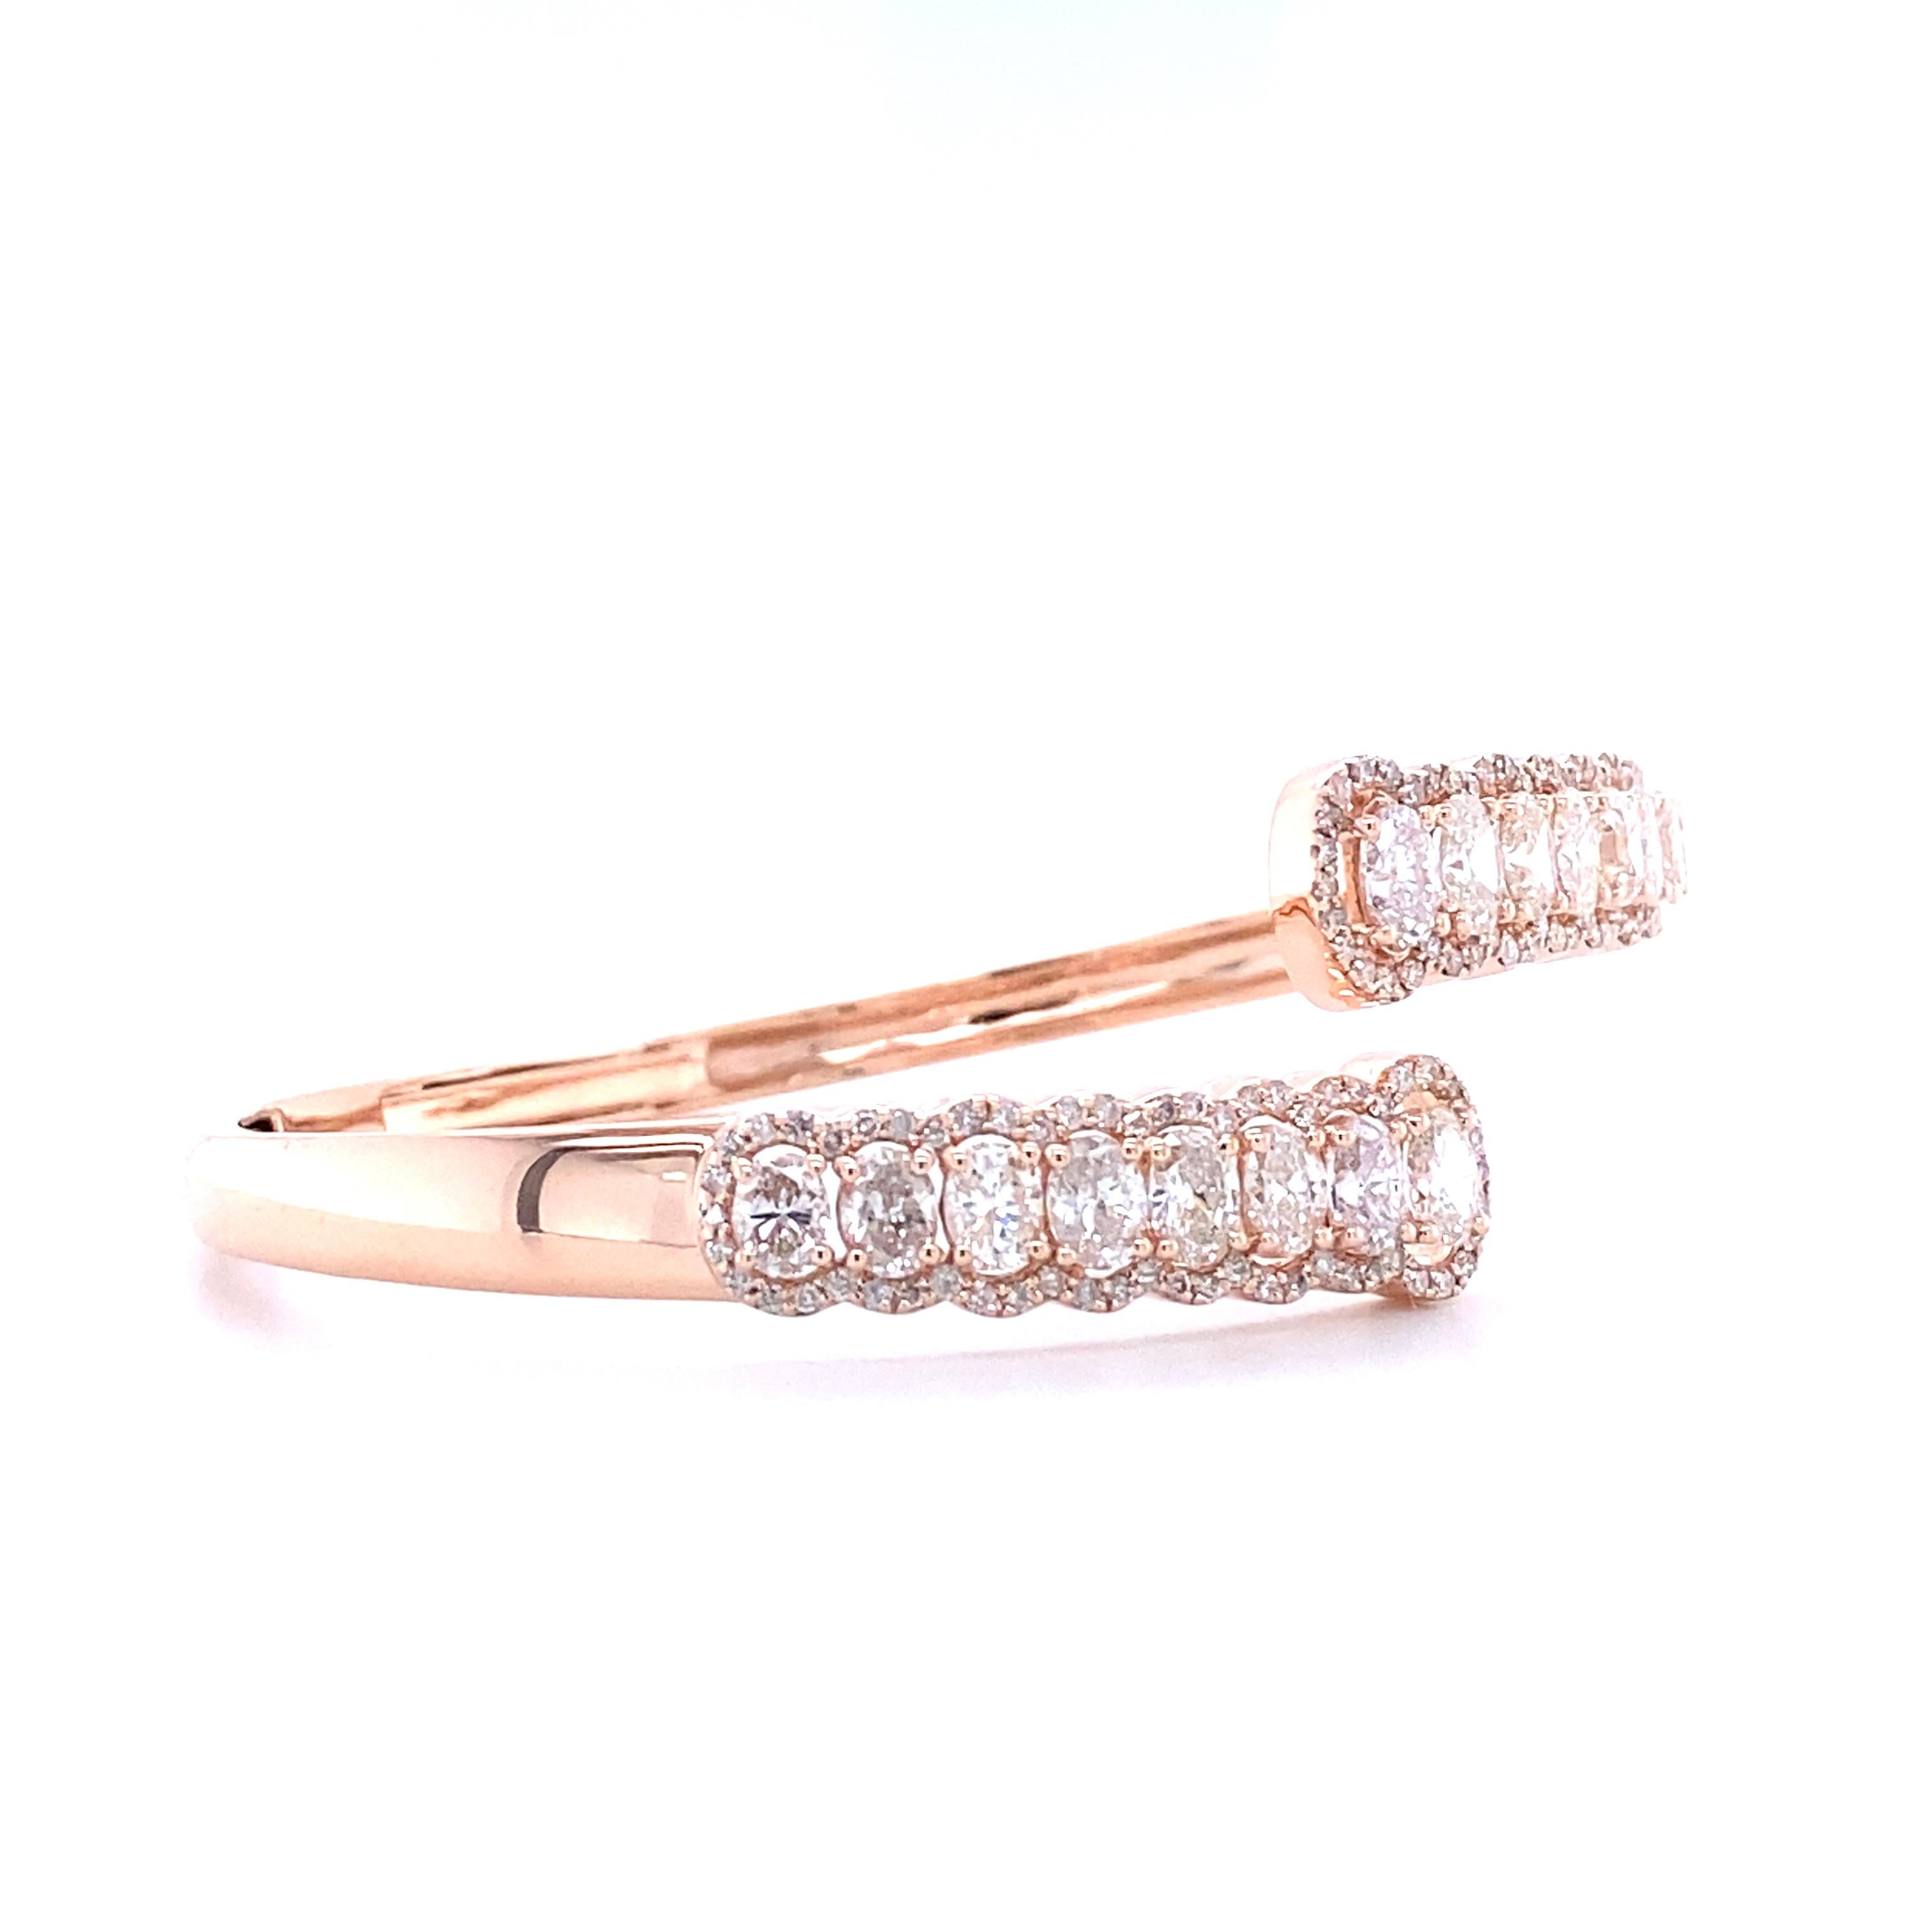 Das Oval Diamond Bracelet With Ascending Design Cuff ist ein exquisites Schmuckstück, das aus hochwertigem, massivem 18-karätigem Gold gefertigt ist. Das Armband besteht aus einer Reihe von Diamanten im Ovalschliff, die entlang der Manschette